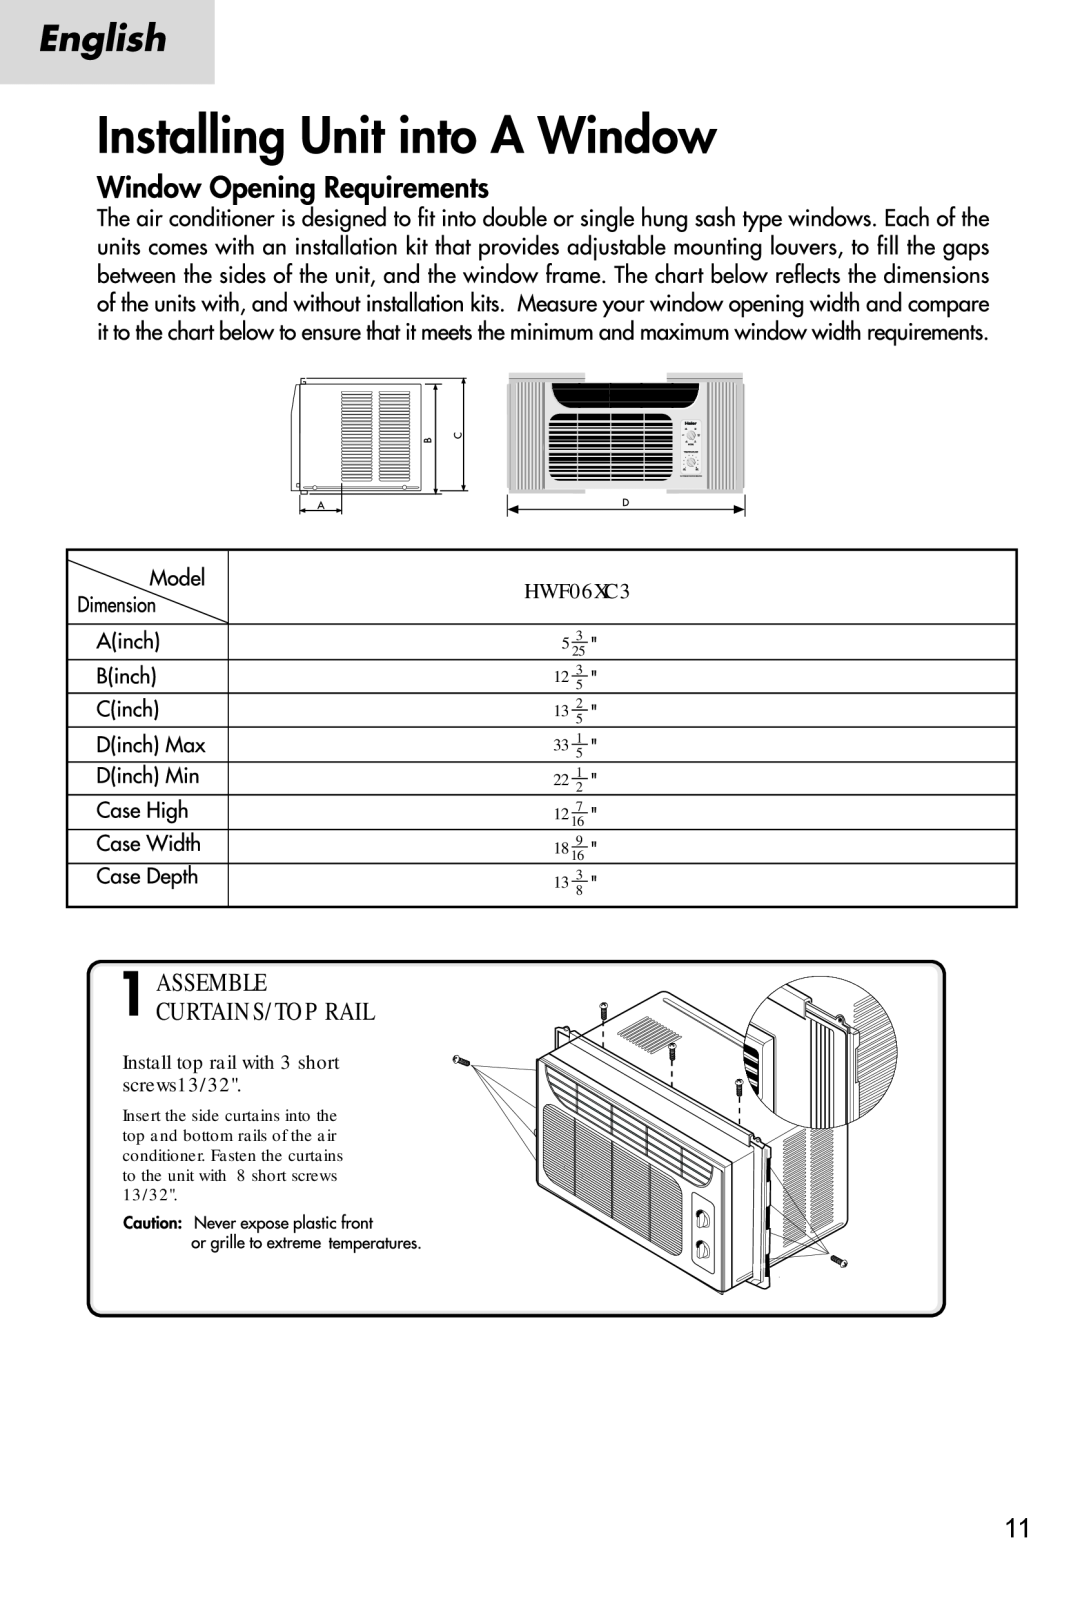 Haier HWF06XC3 manual Assemble Curtains/Top Rail, Install top rail with 3 short screws13/32 